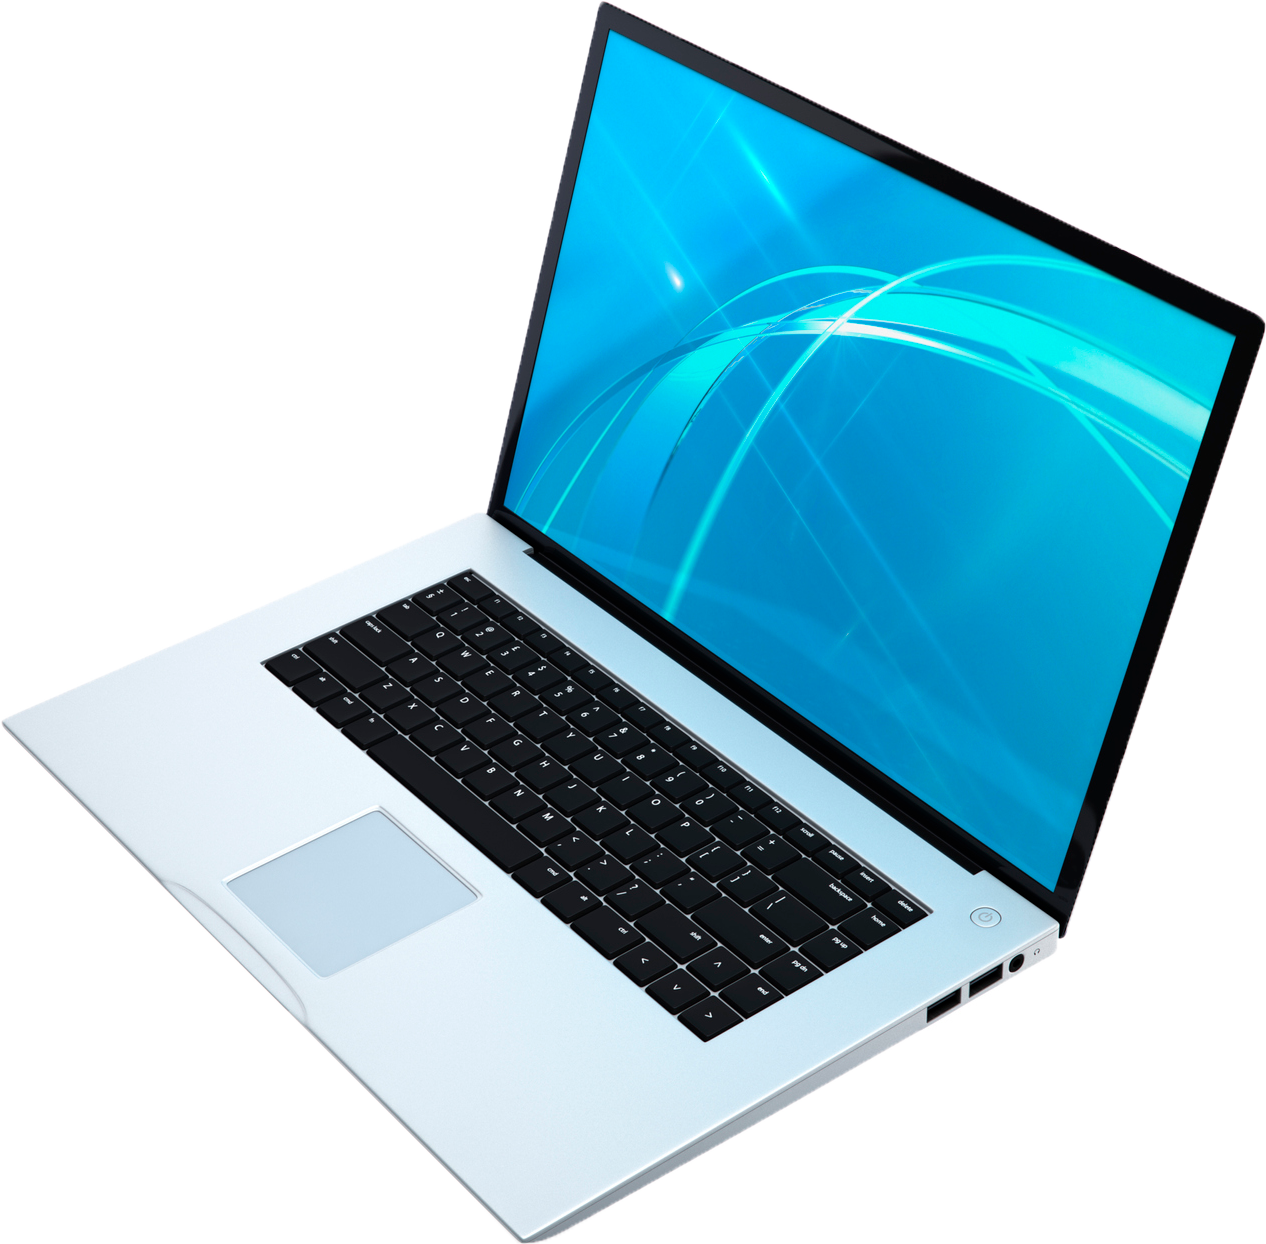 Laptop — Westfield, MA — Darling Associates